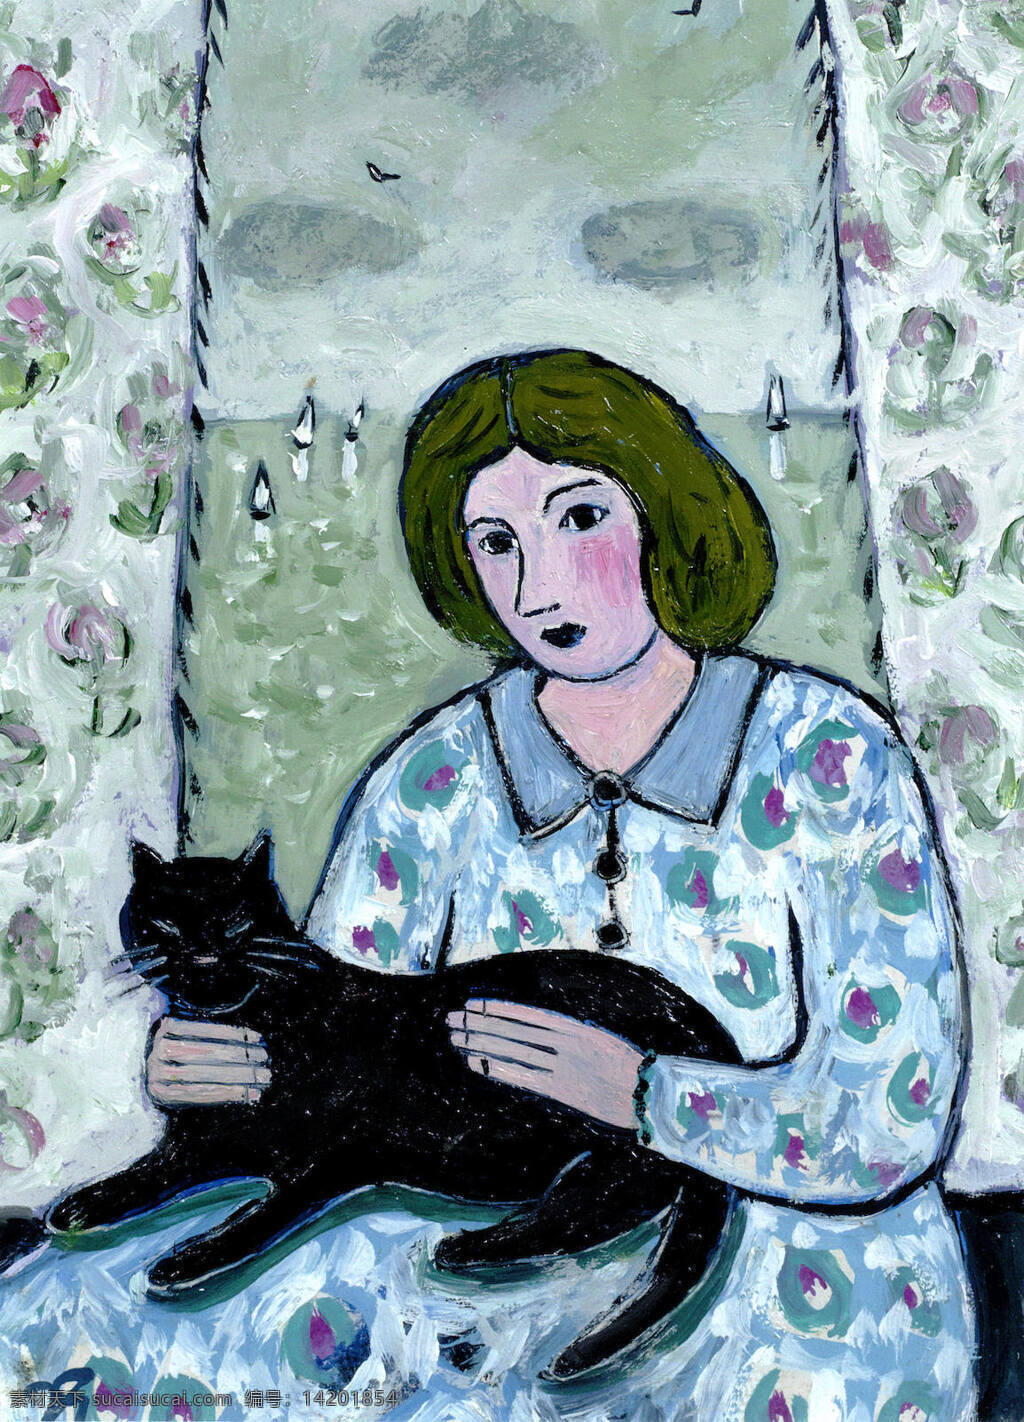 乔 吉尔 克里斯特 作品 英国画家 一女士 摆弄 一只黑猫 碎花窗帘 窗外 大海 船只 20世纪油画 油画 文化艺术 绘画书法